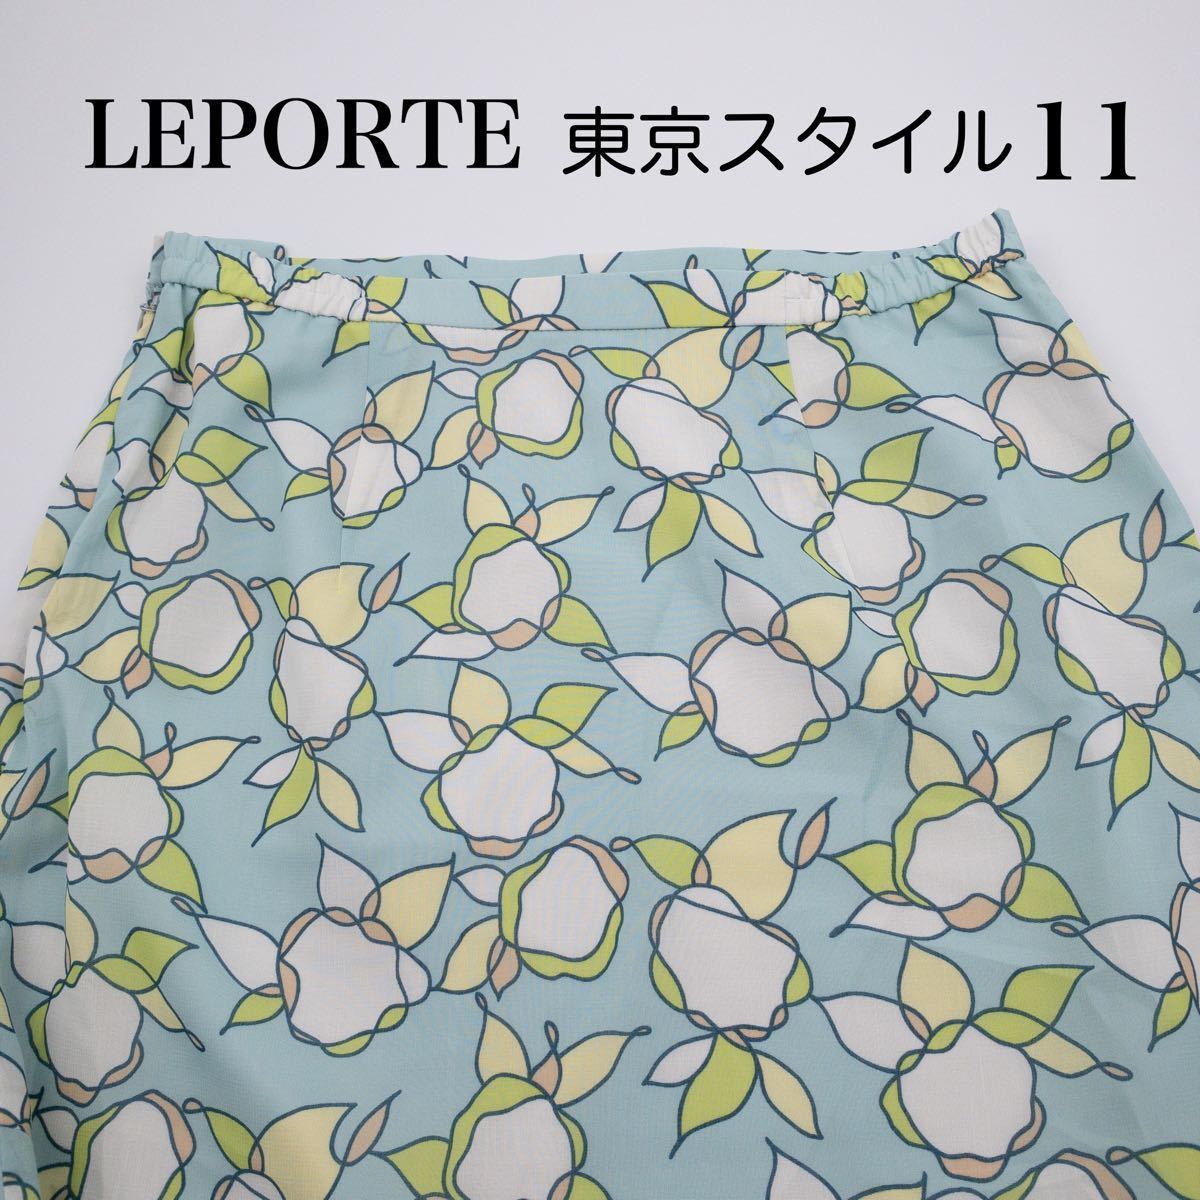 【美品】東京スタイル LEPORTE ロングスカート 日本製 M L レディース スカート 春 夏